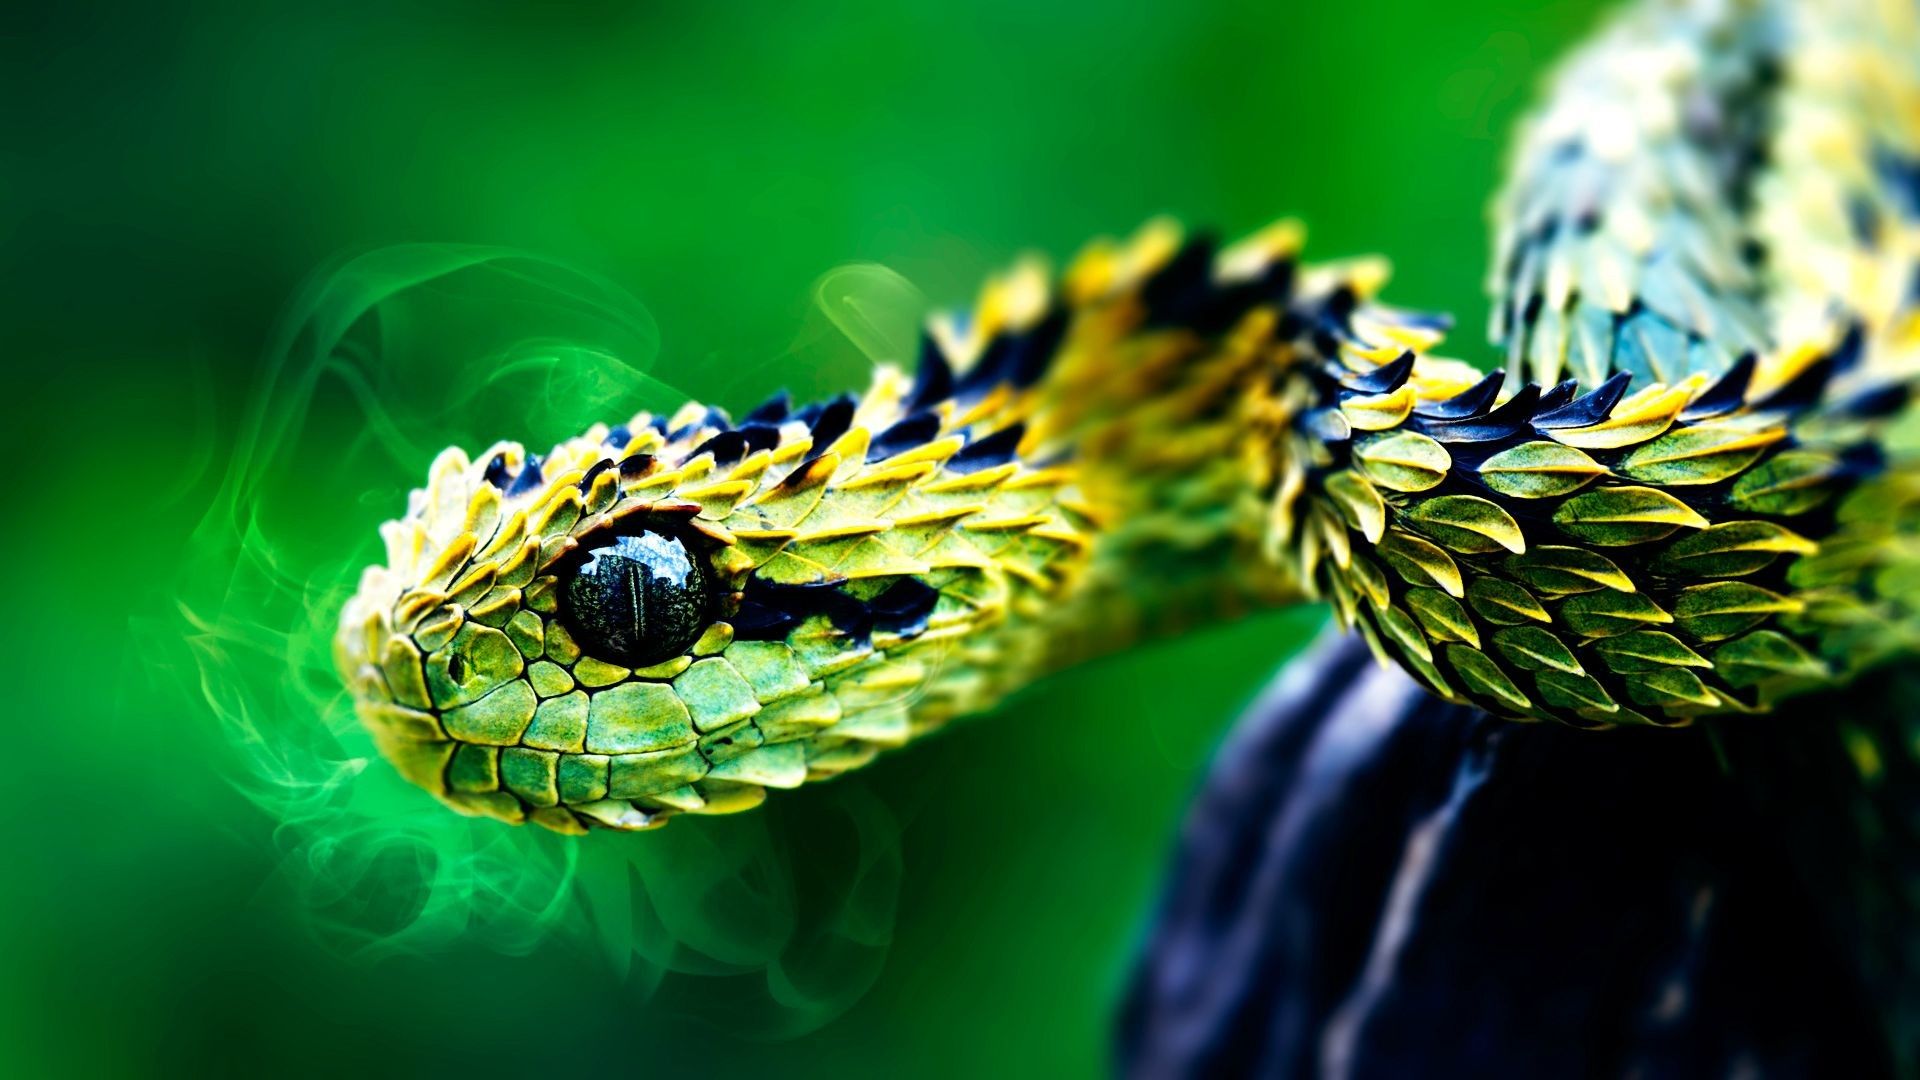 Viper Snake Wallpaper Free Viper Snake Background